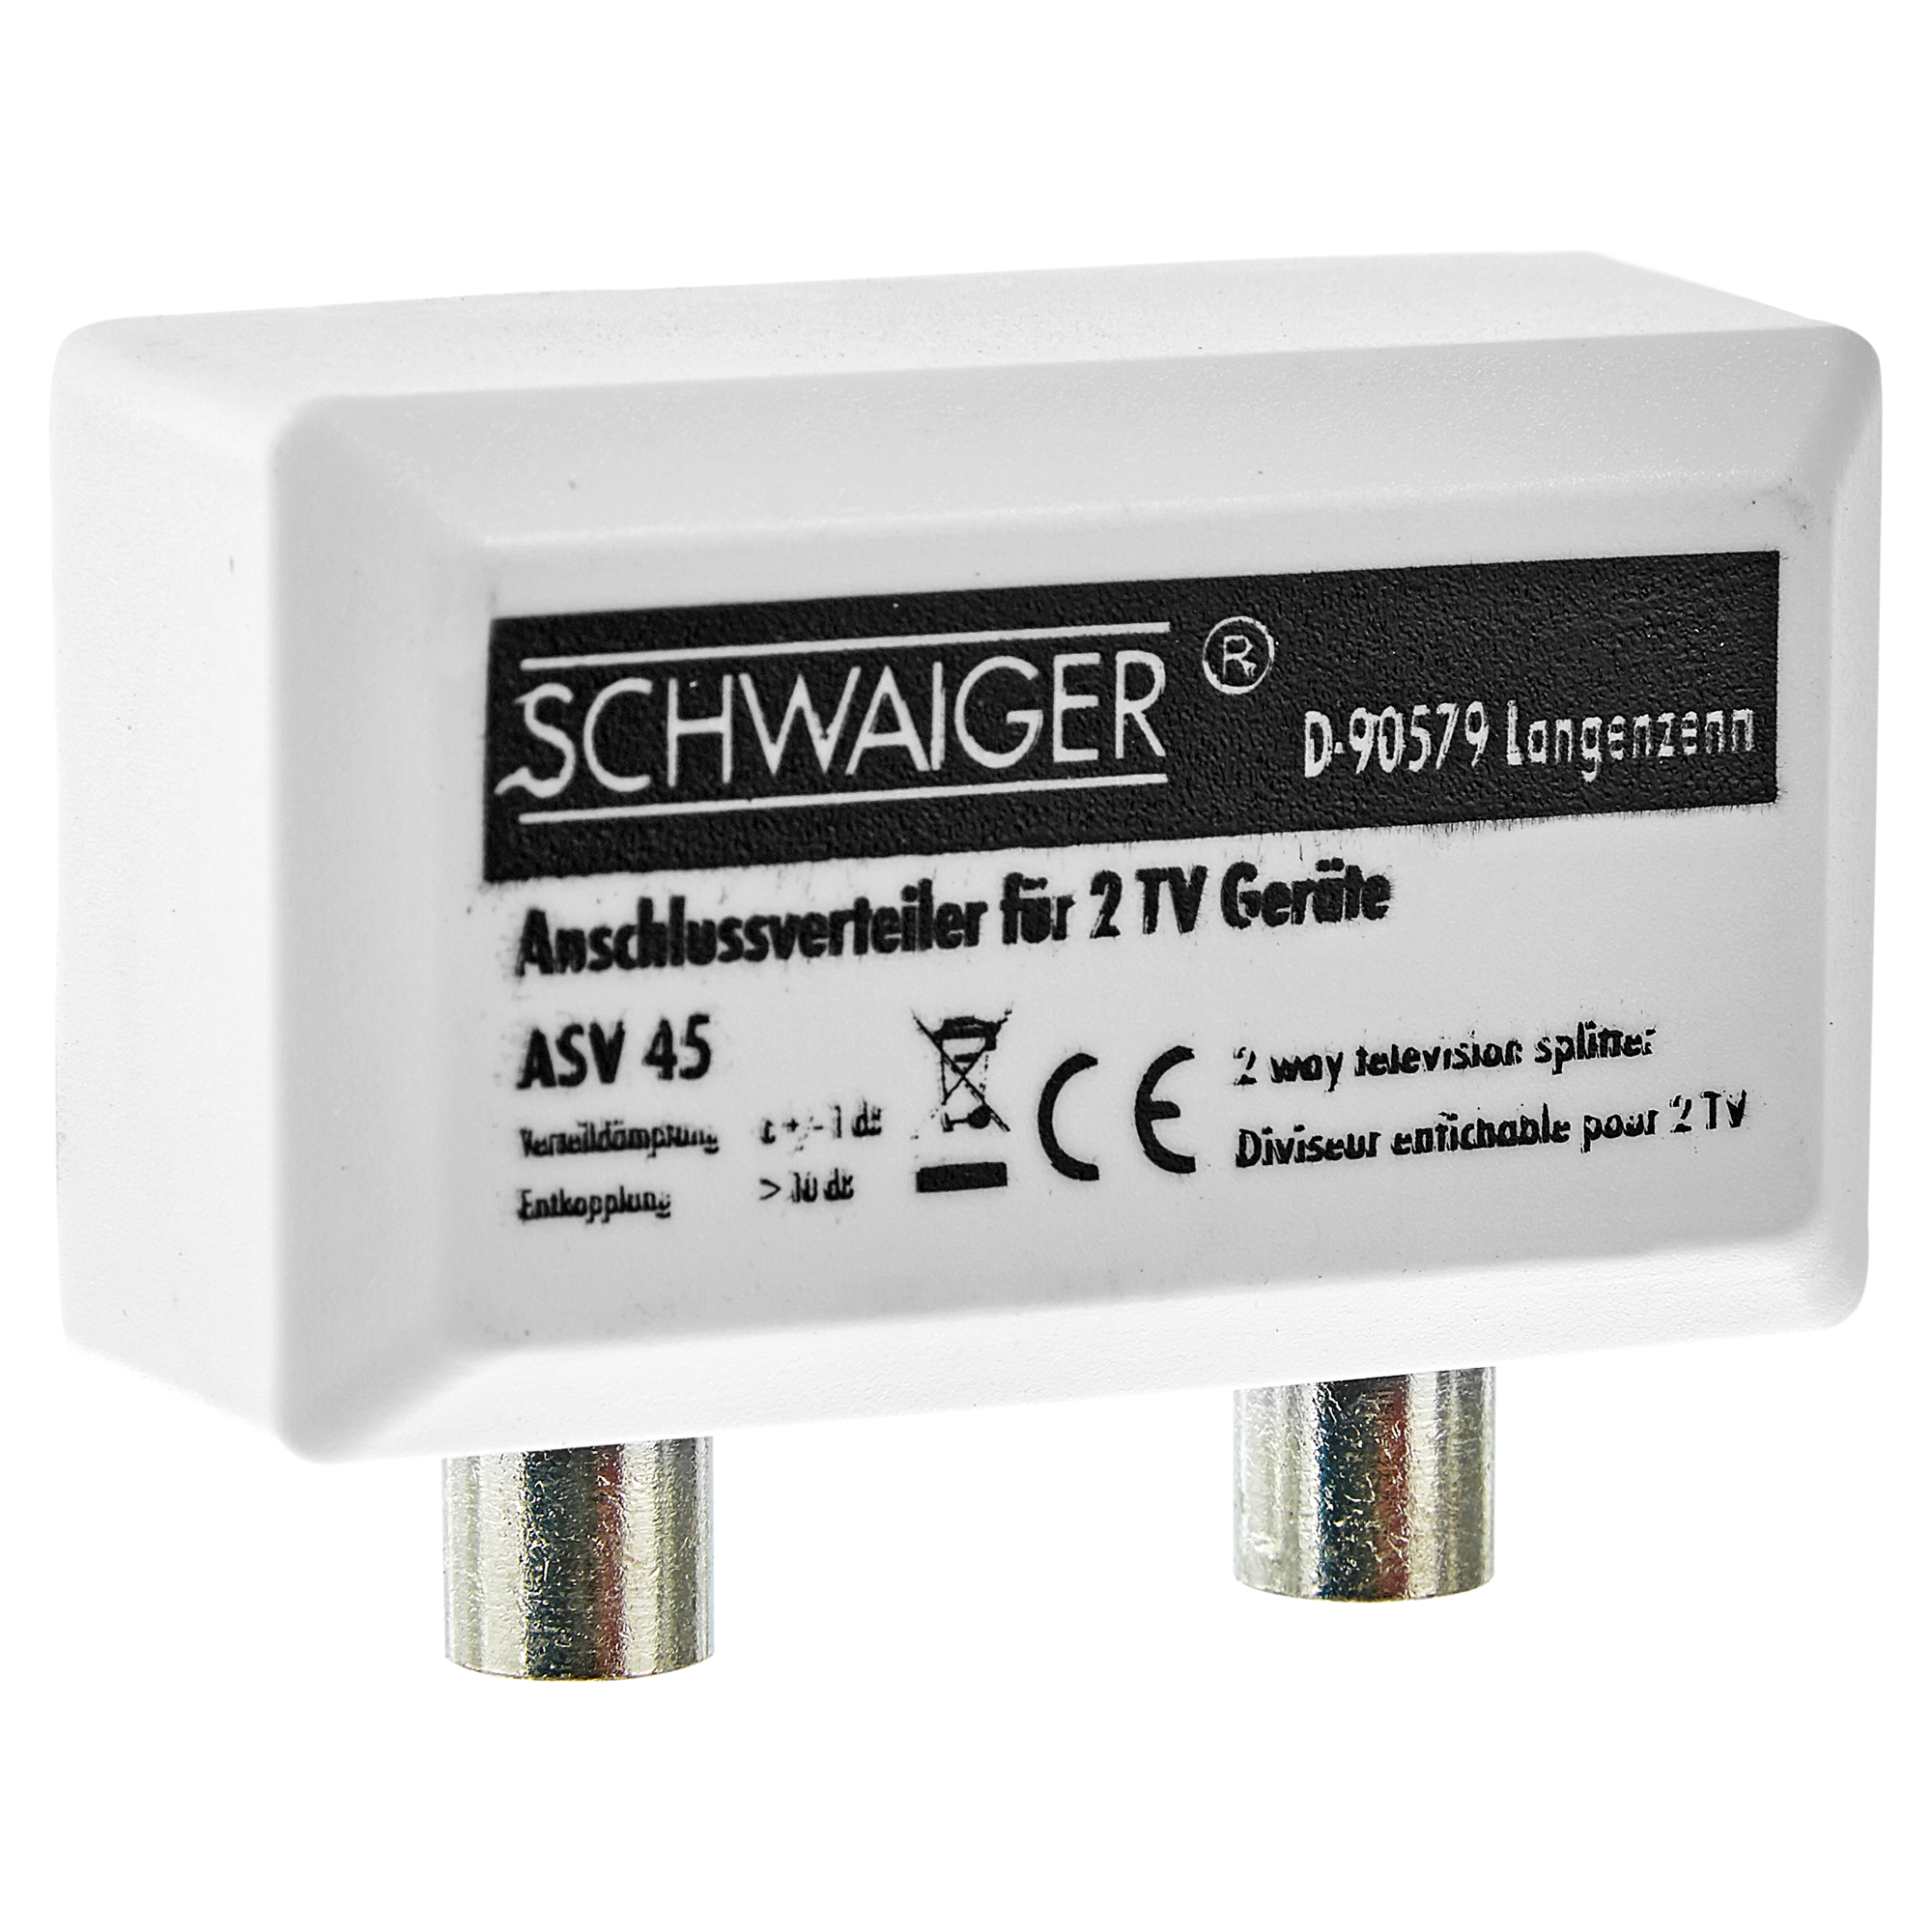 Schwaiger TV-Anschlussverteiler „Antenna“ ASV45 2-fach weiß